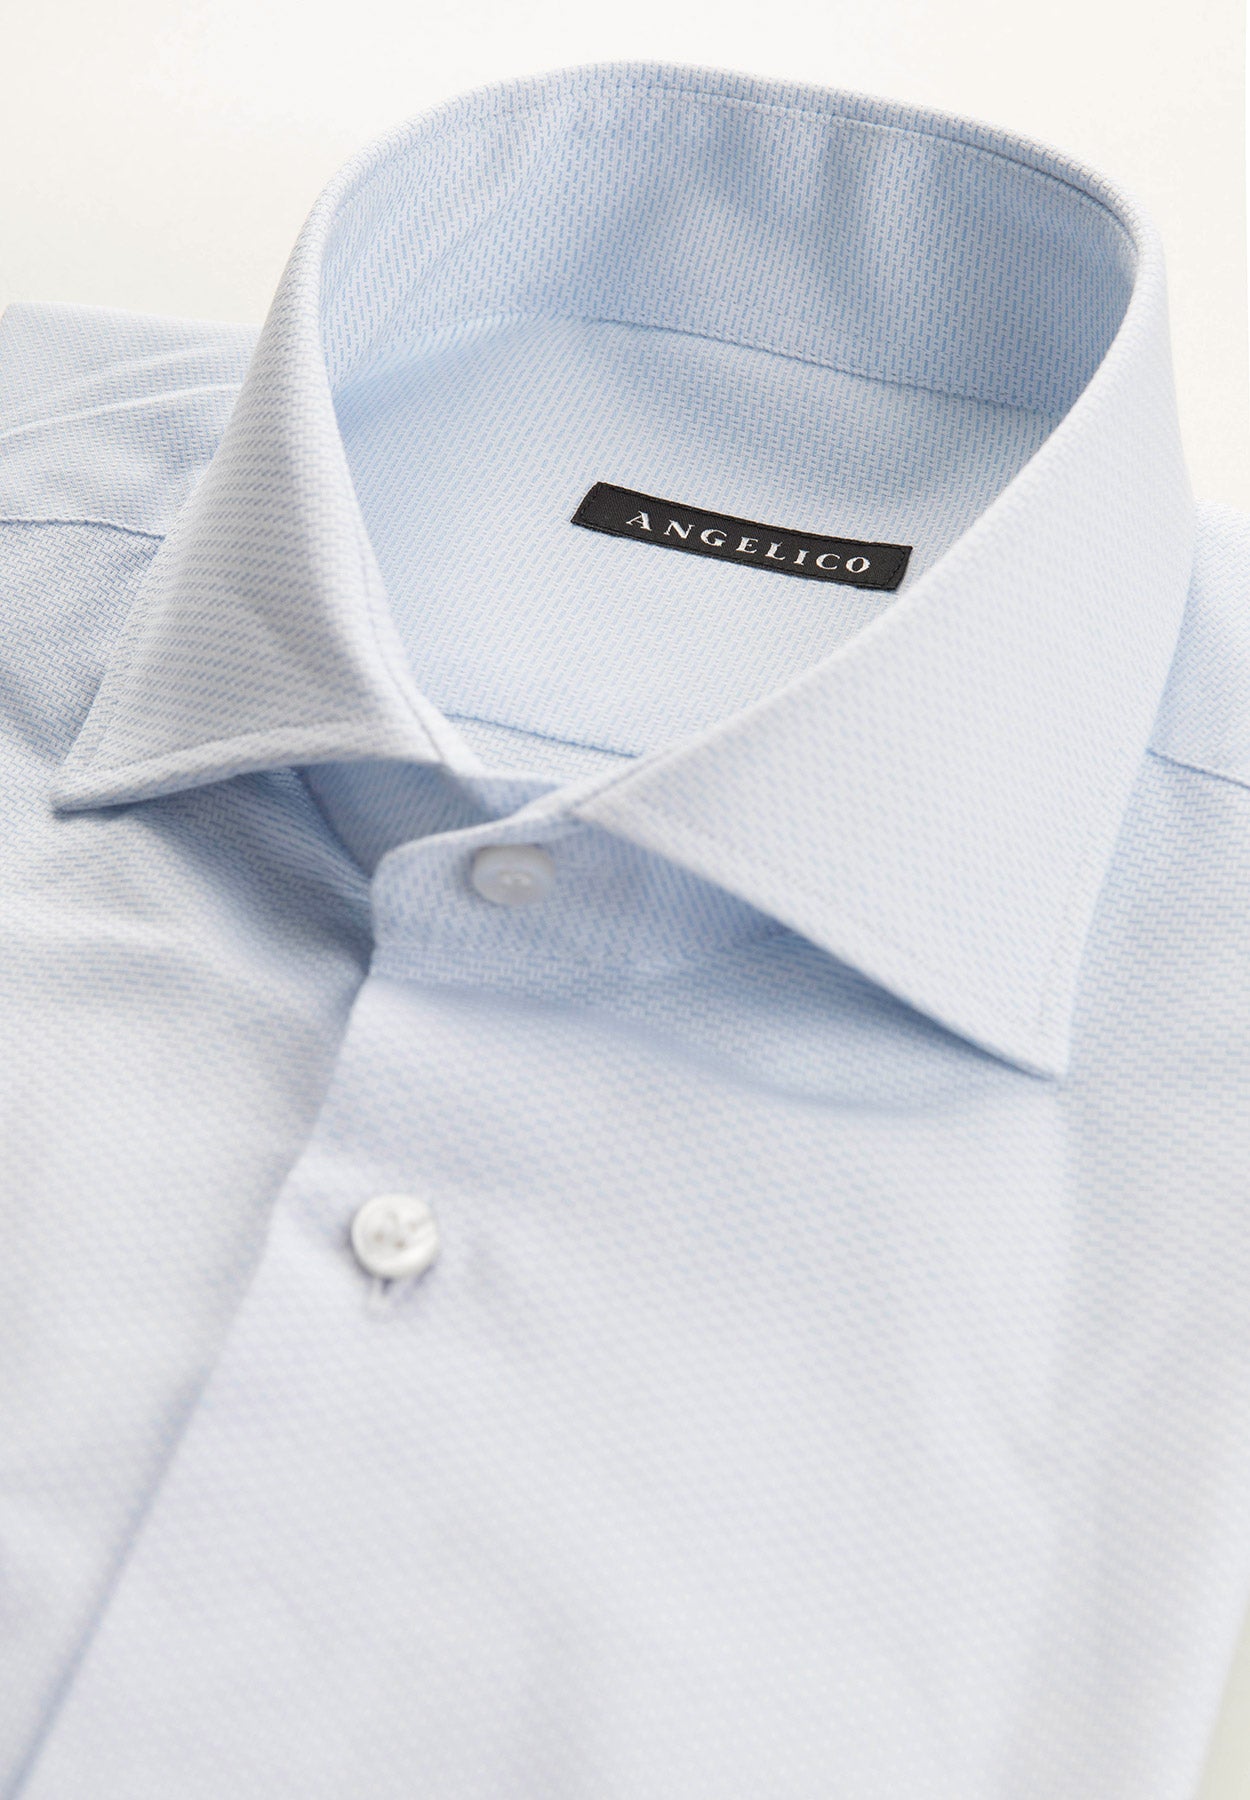 Camicia celeste microdisegno cotone regular fit